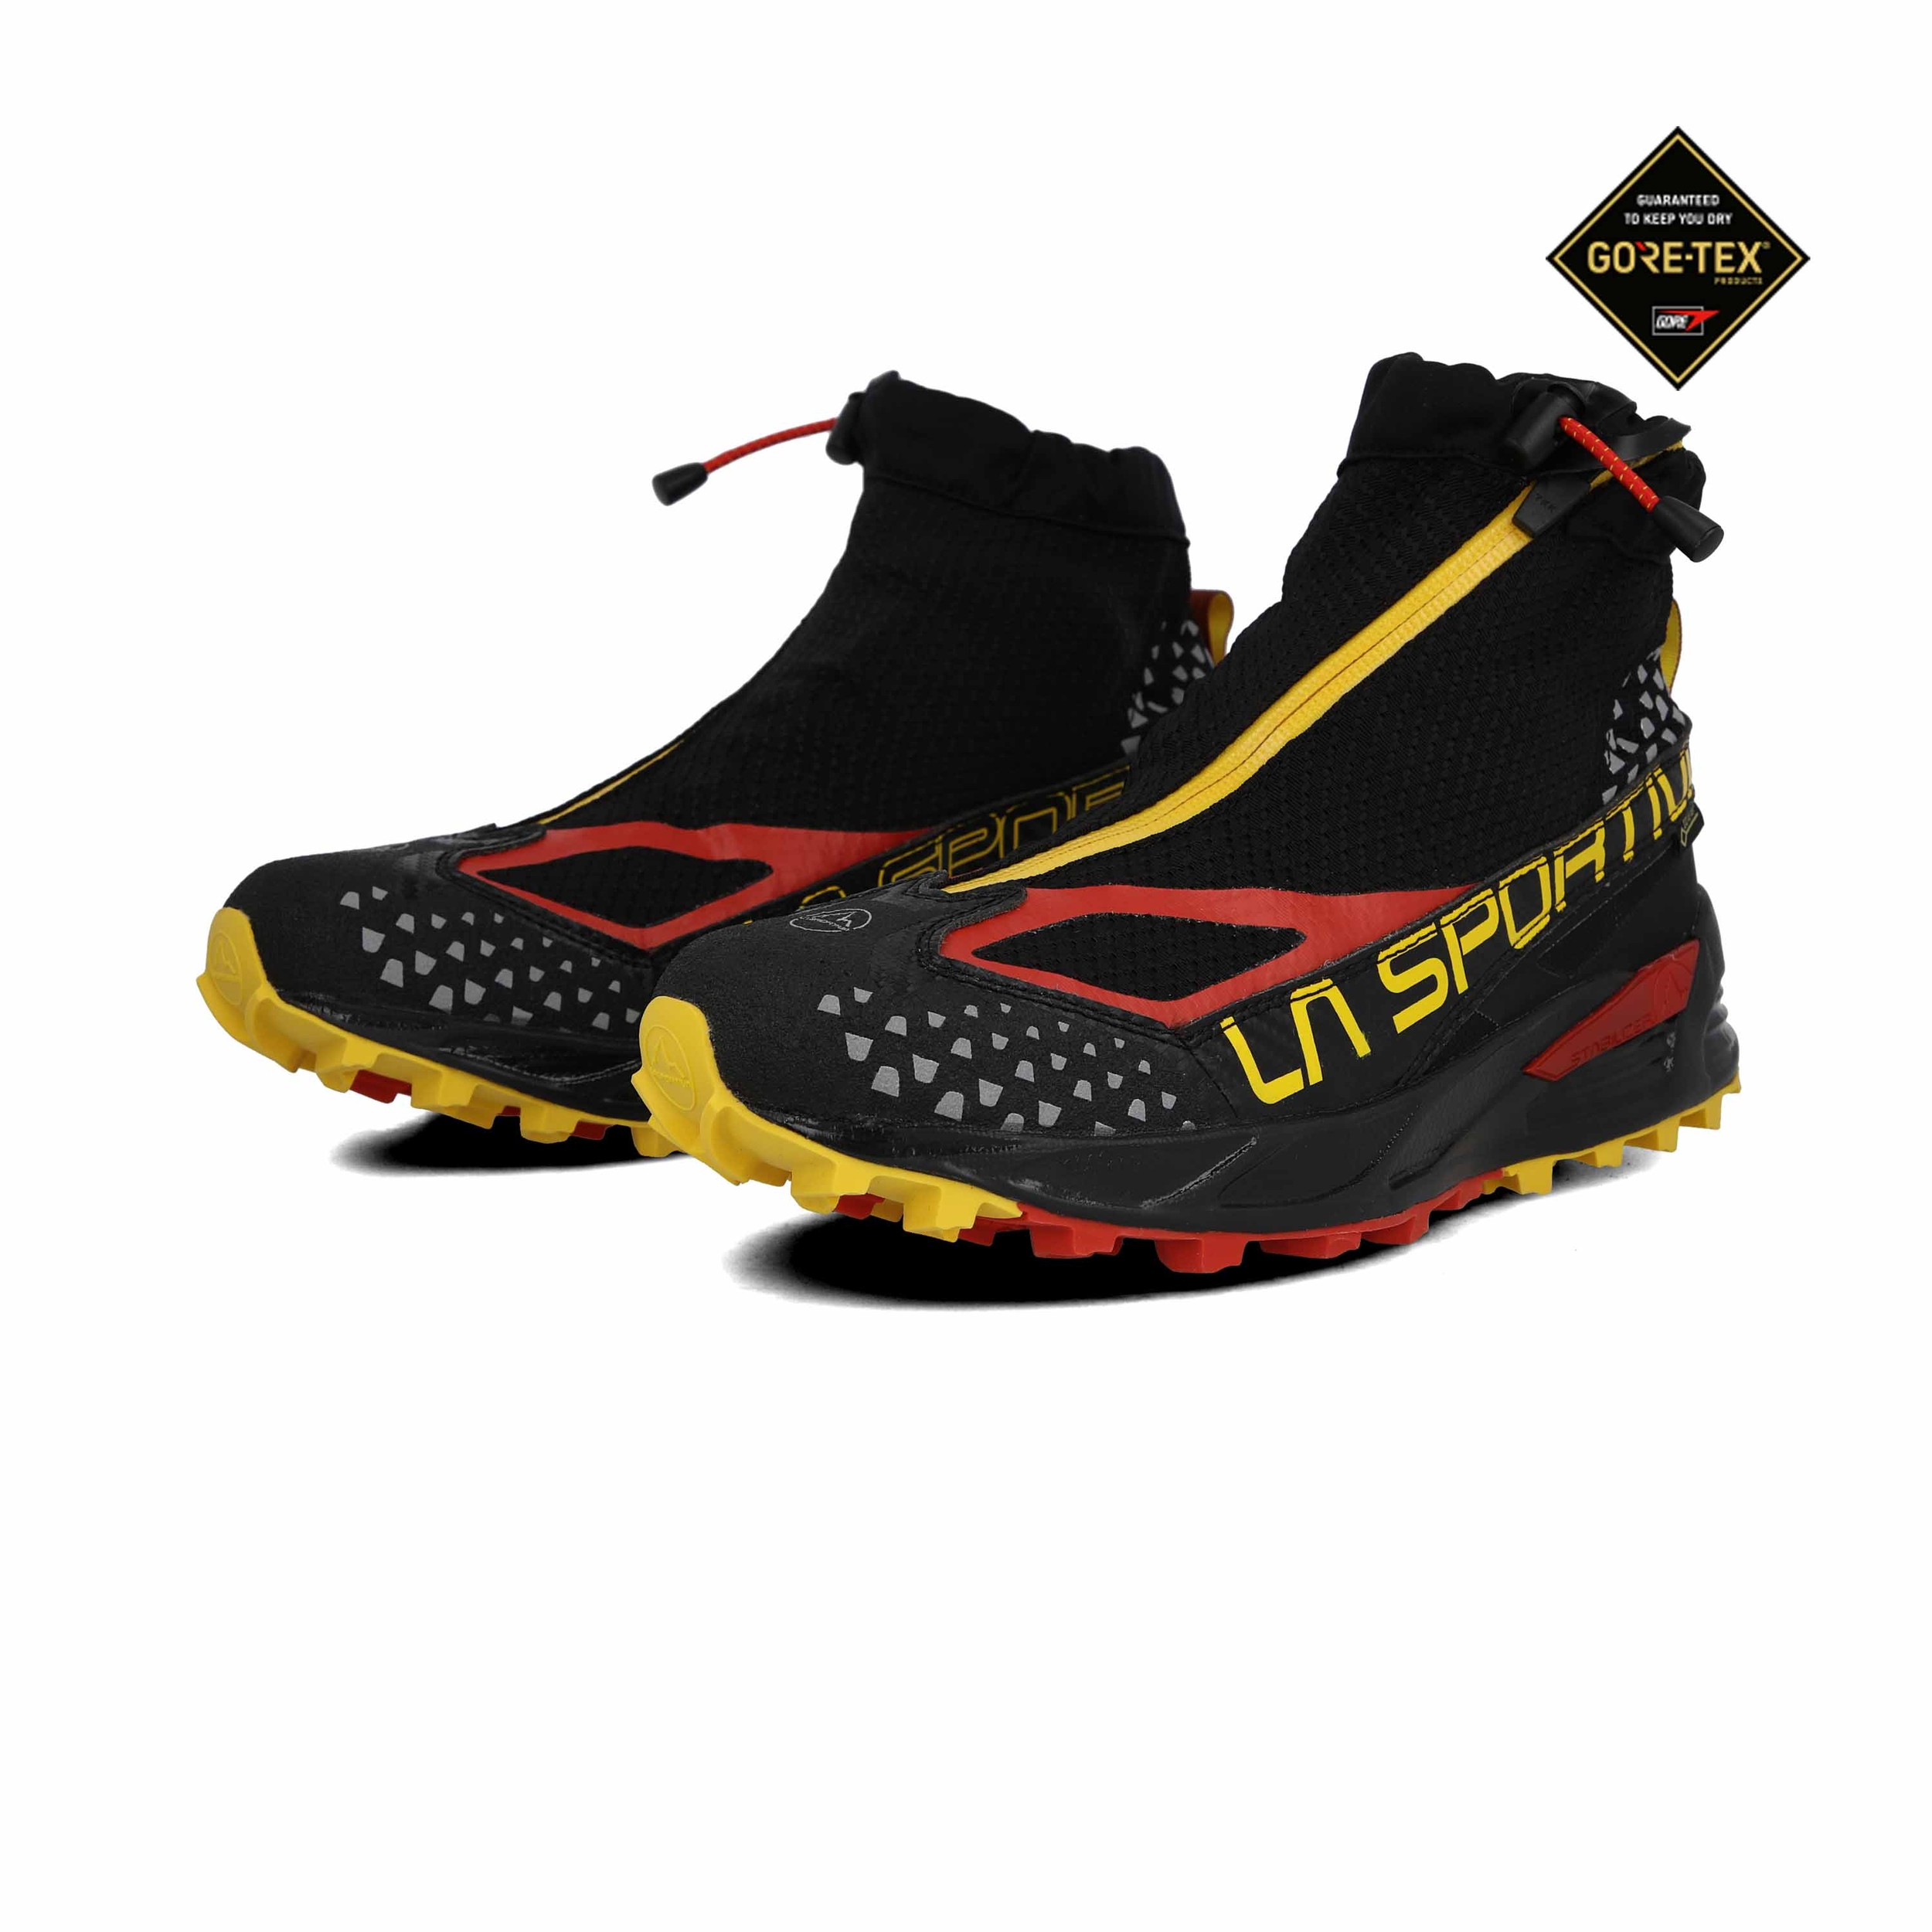 La Sportiva Crossover 2.0 GORE-TEX zapatillas de trail running  - SS20